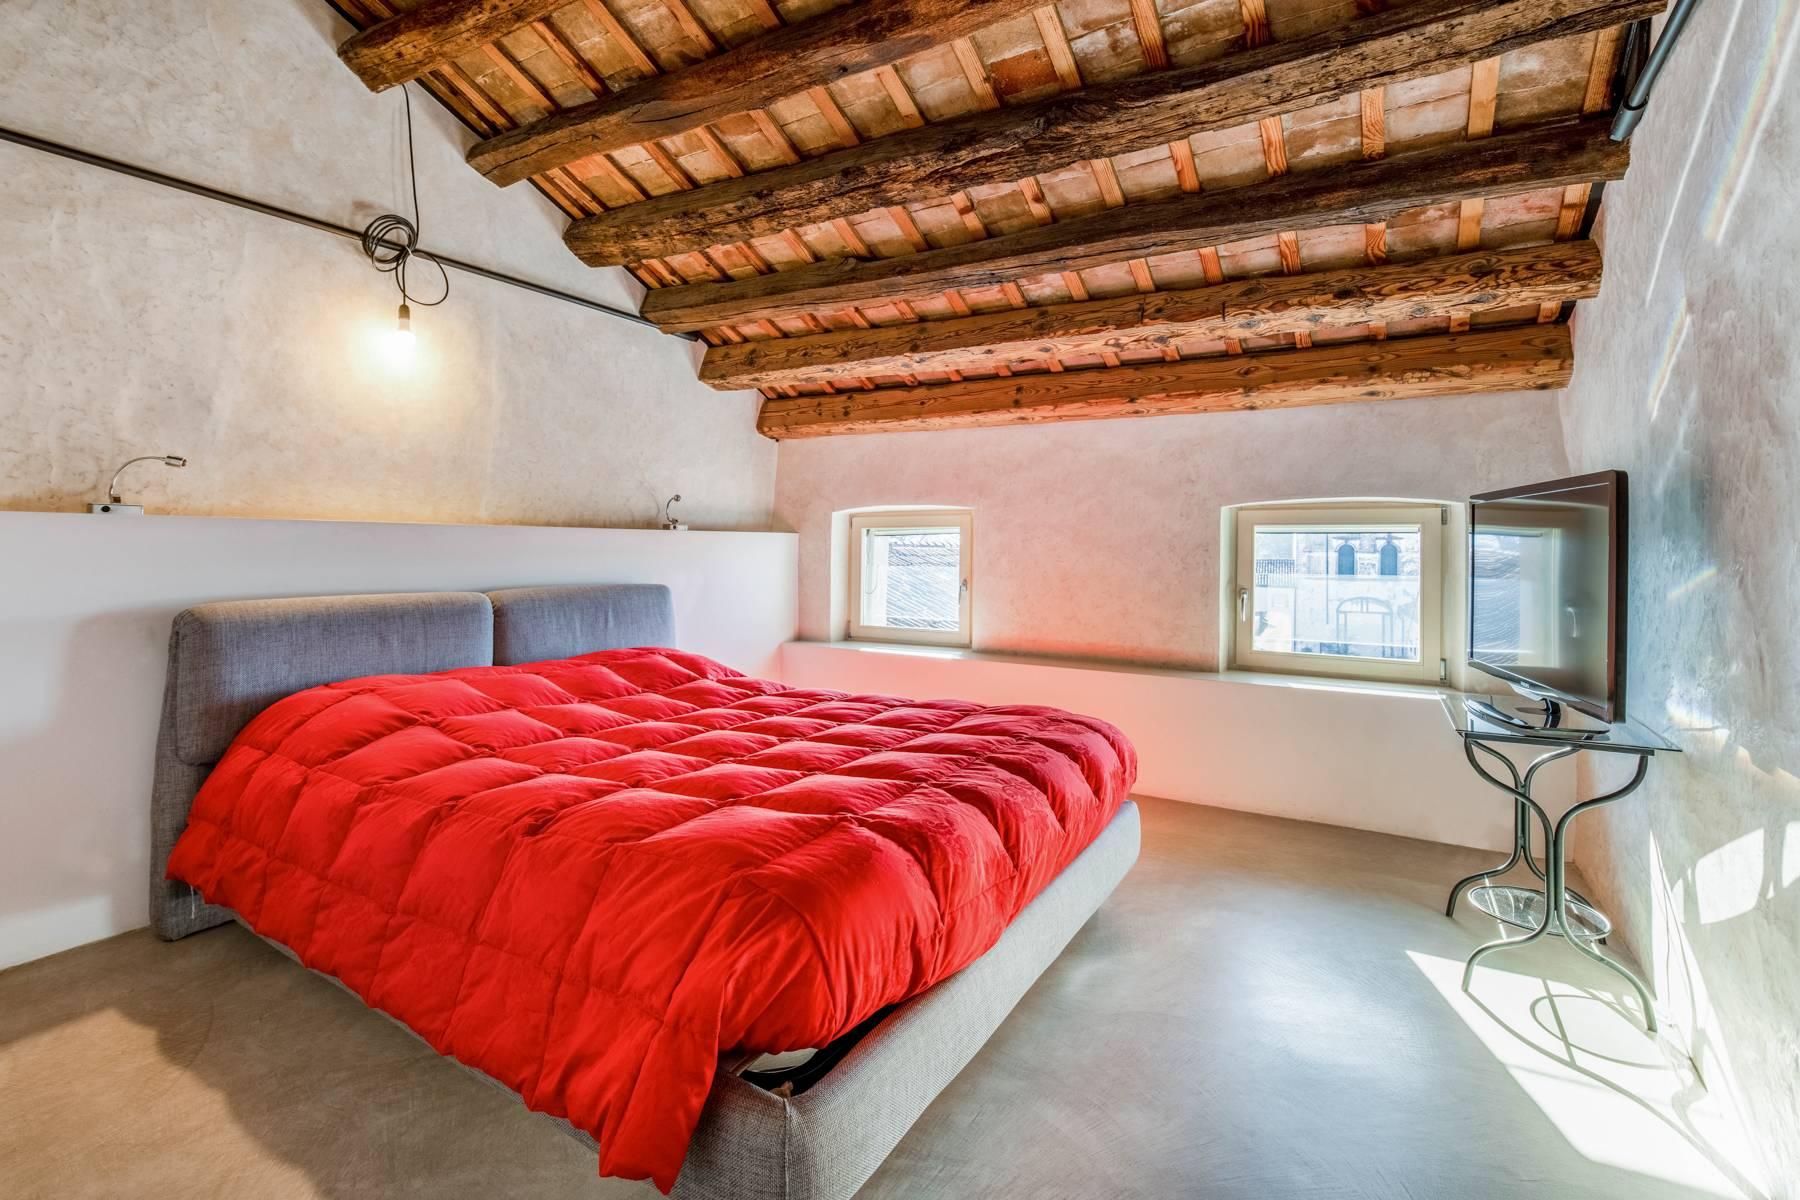 Penthouse de luxe dans une villa vénitienne du 17ème siècle entièrement rénovée - 13